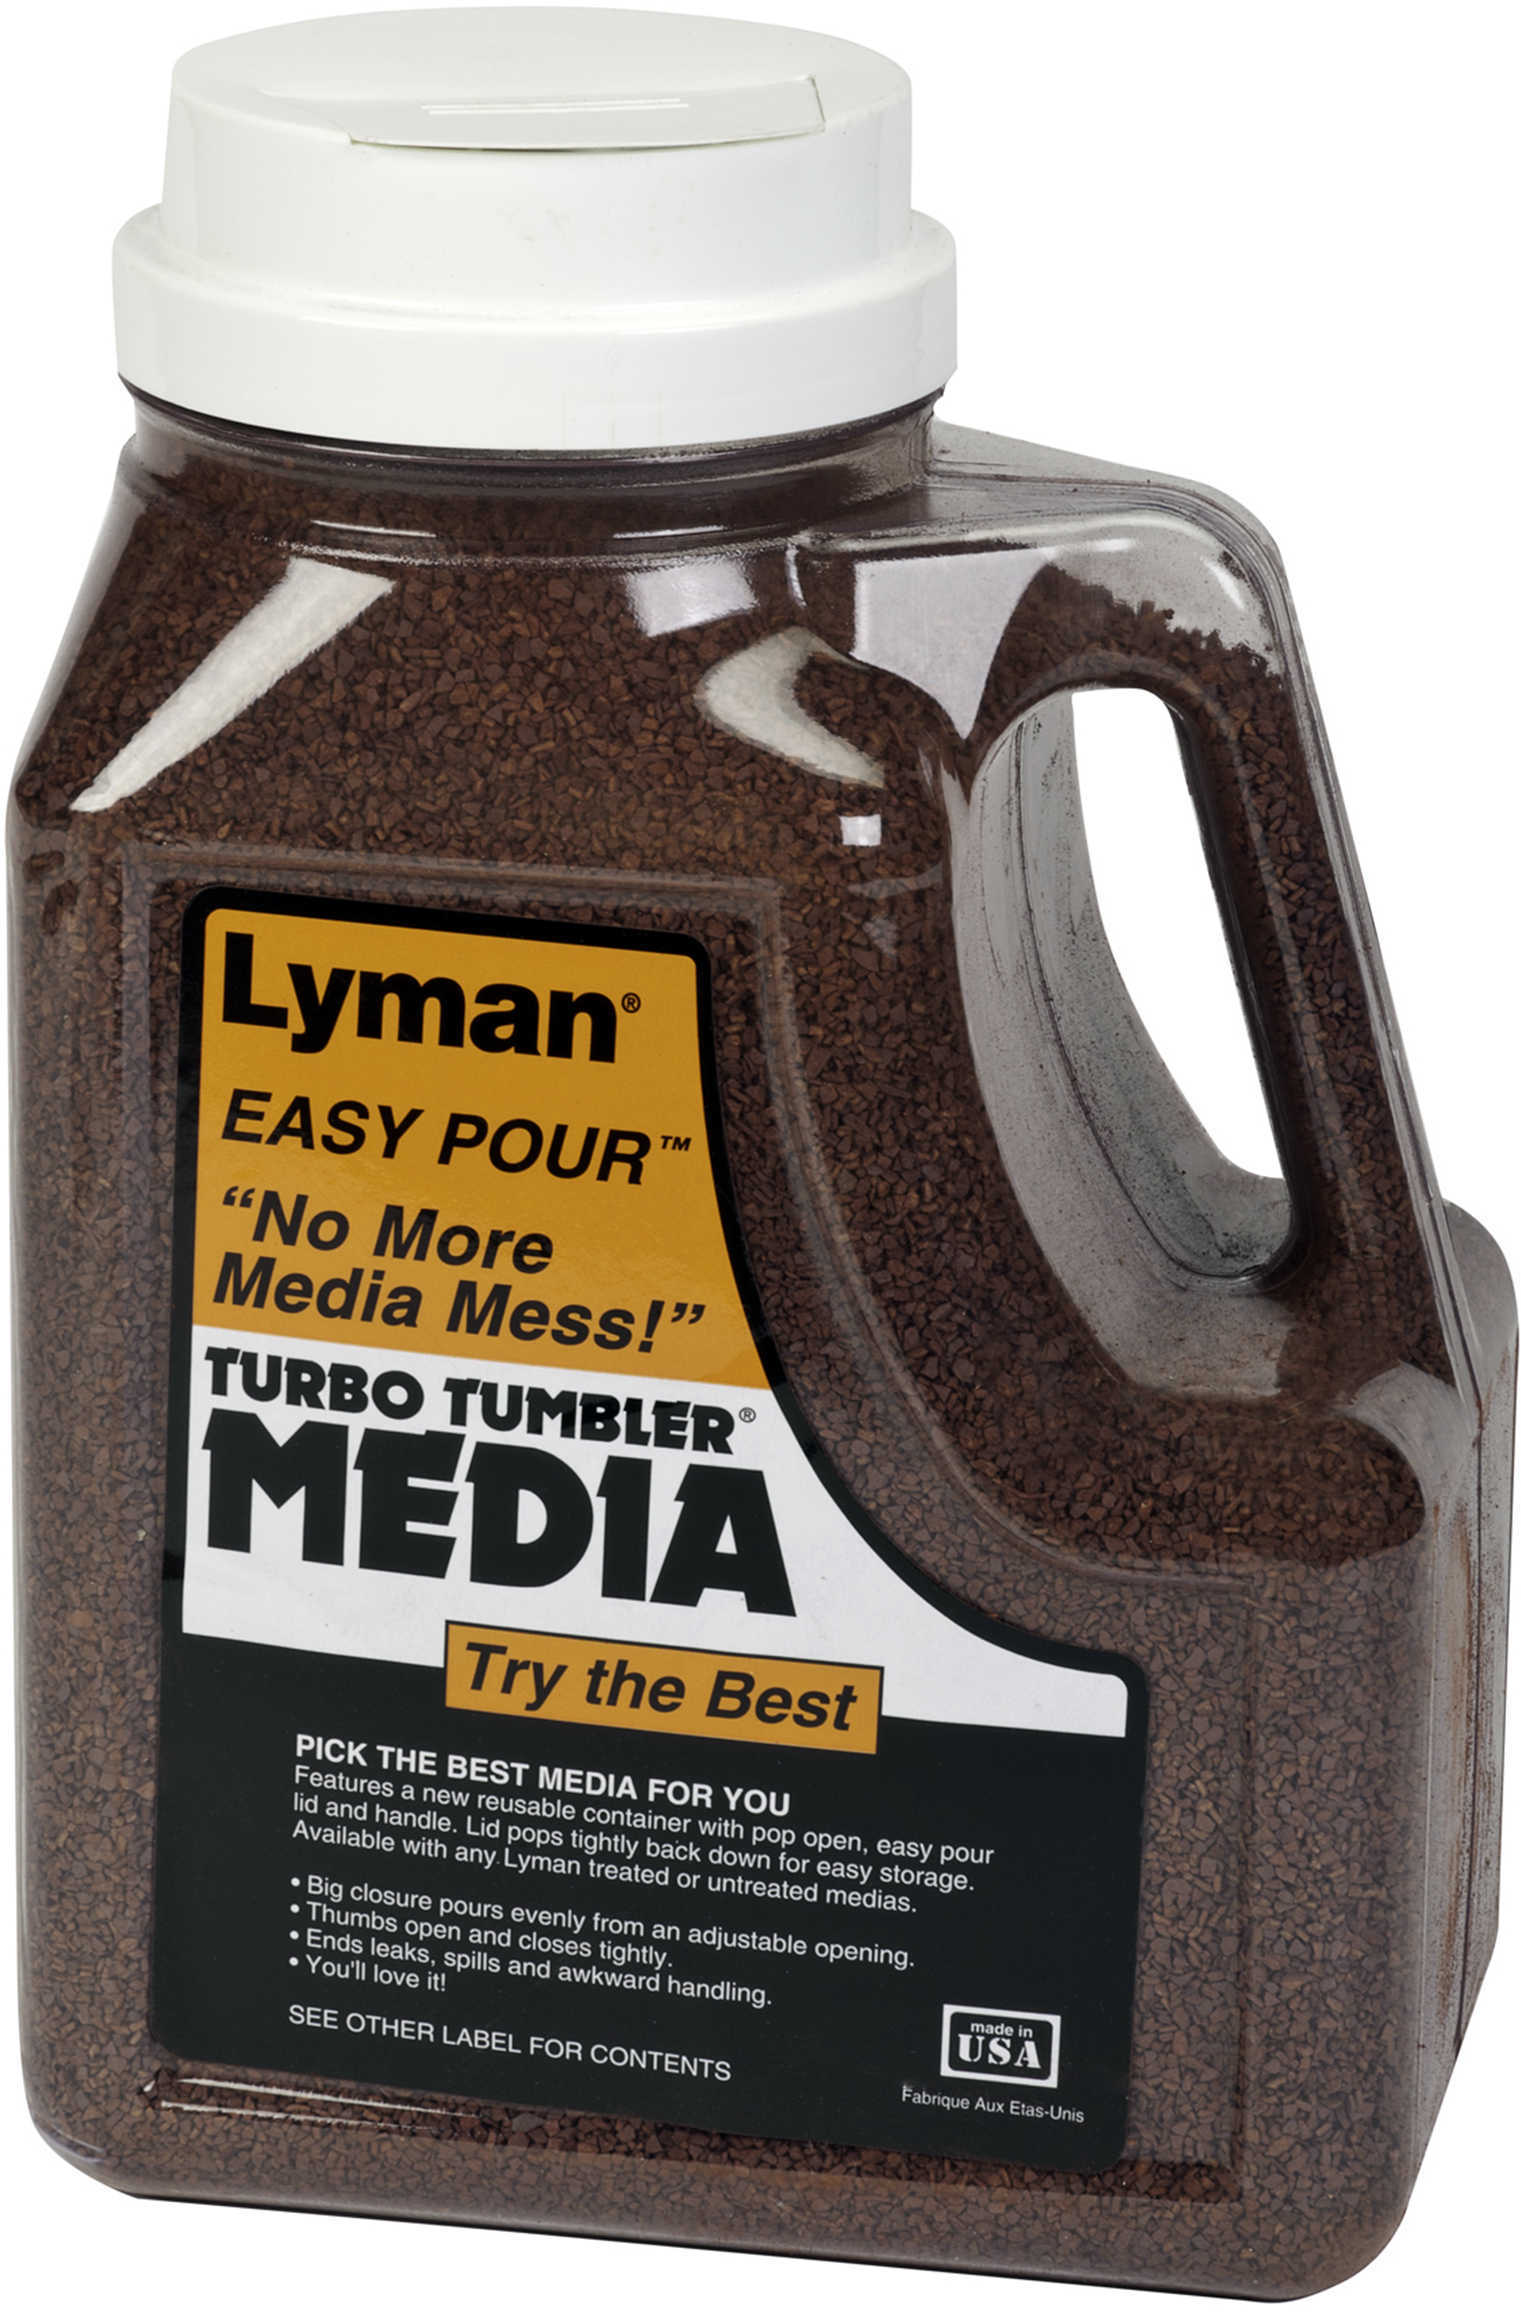 Lyman 7 Lb Easy Pour Tufnut Media Md: 7631396